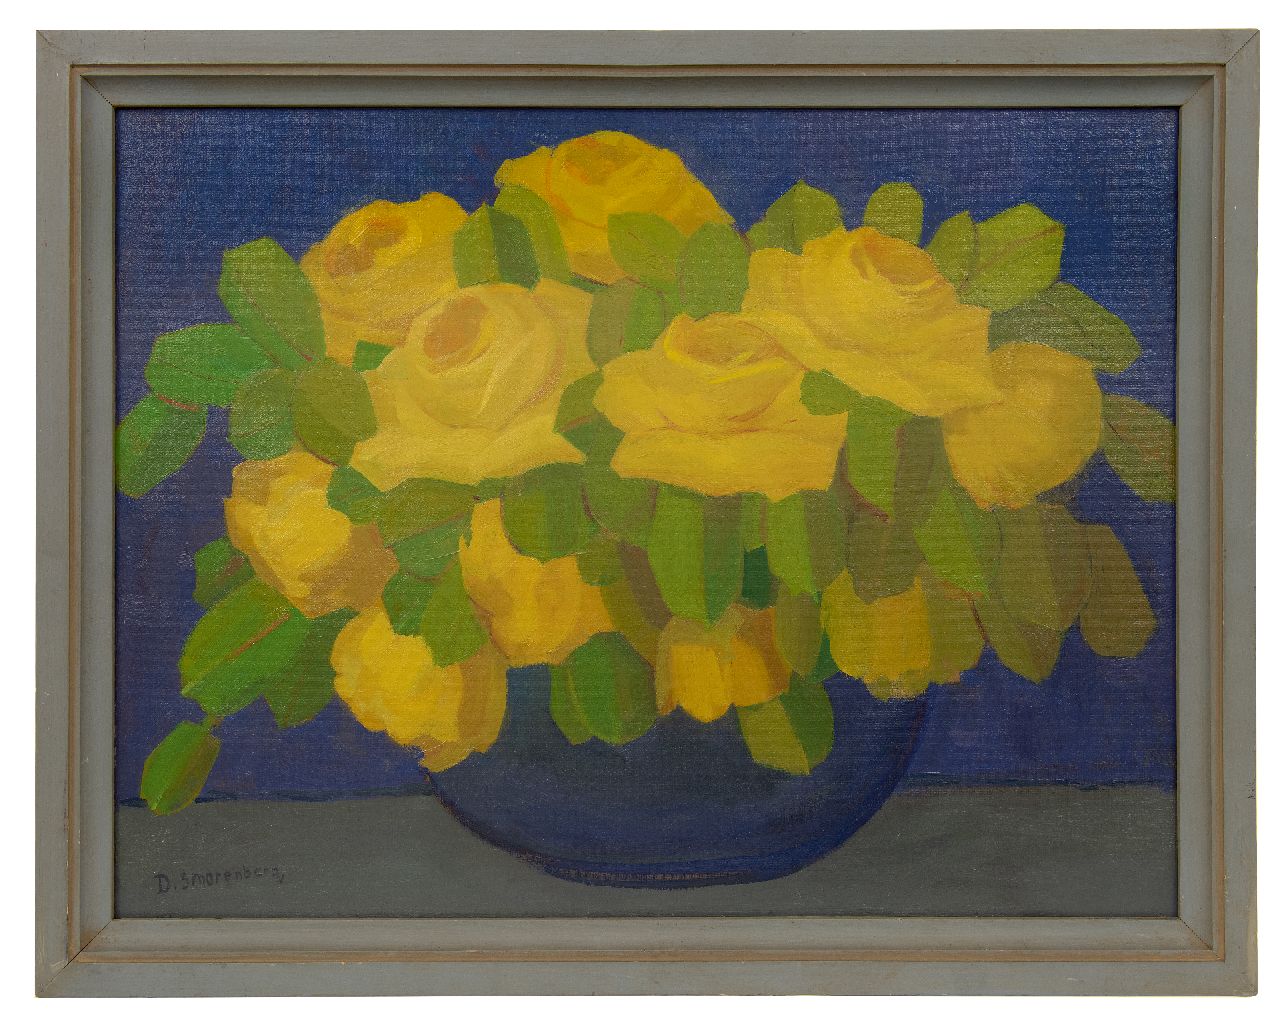 Smorenberg D.  | Dirk Smorenberg, Gele rozen in blauwe vaas, olieverf op board 55,0 x 72,7 cm, gesigneerd linksonder